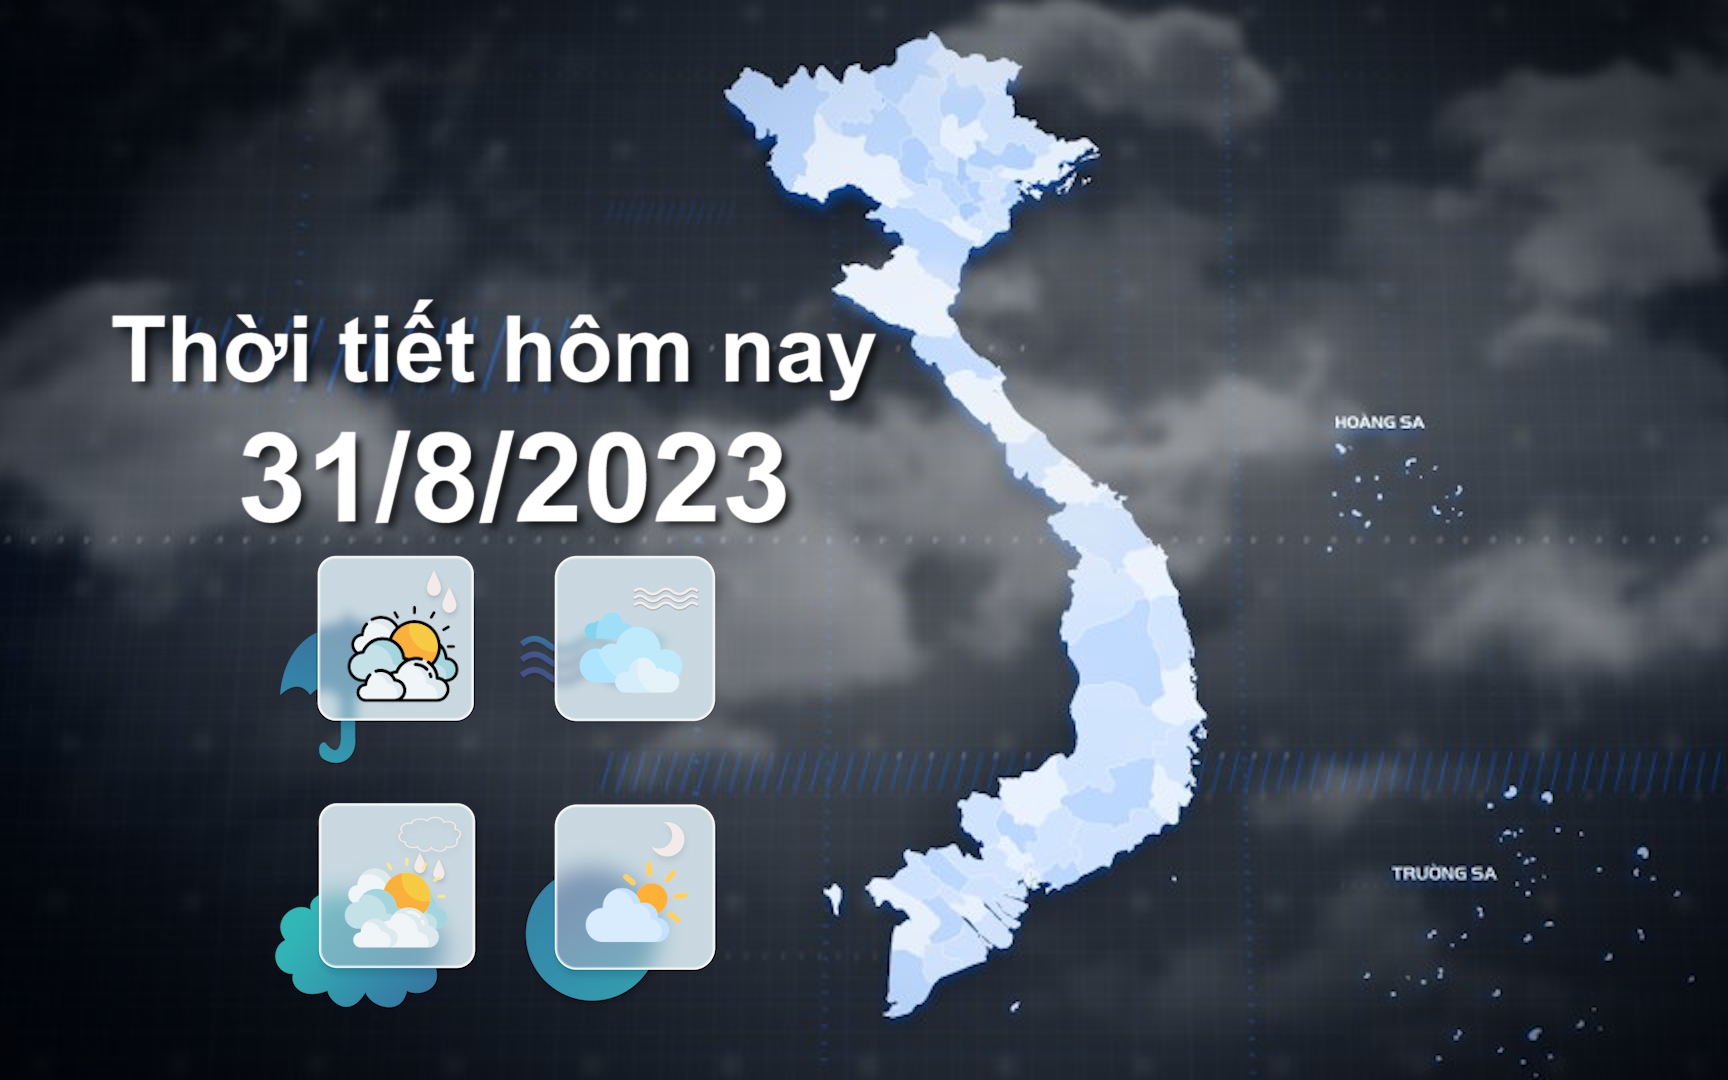 Thời tiết hôm nay 31/8/2023: Bắc Bộ ngày nắng nóng; Tây Nguyên, Nam Bộ có mưa vừa, mưa to